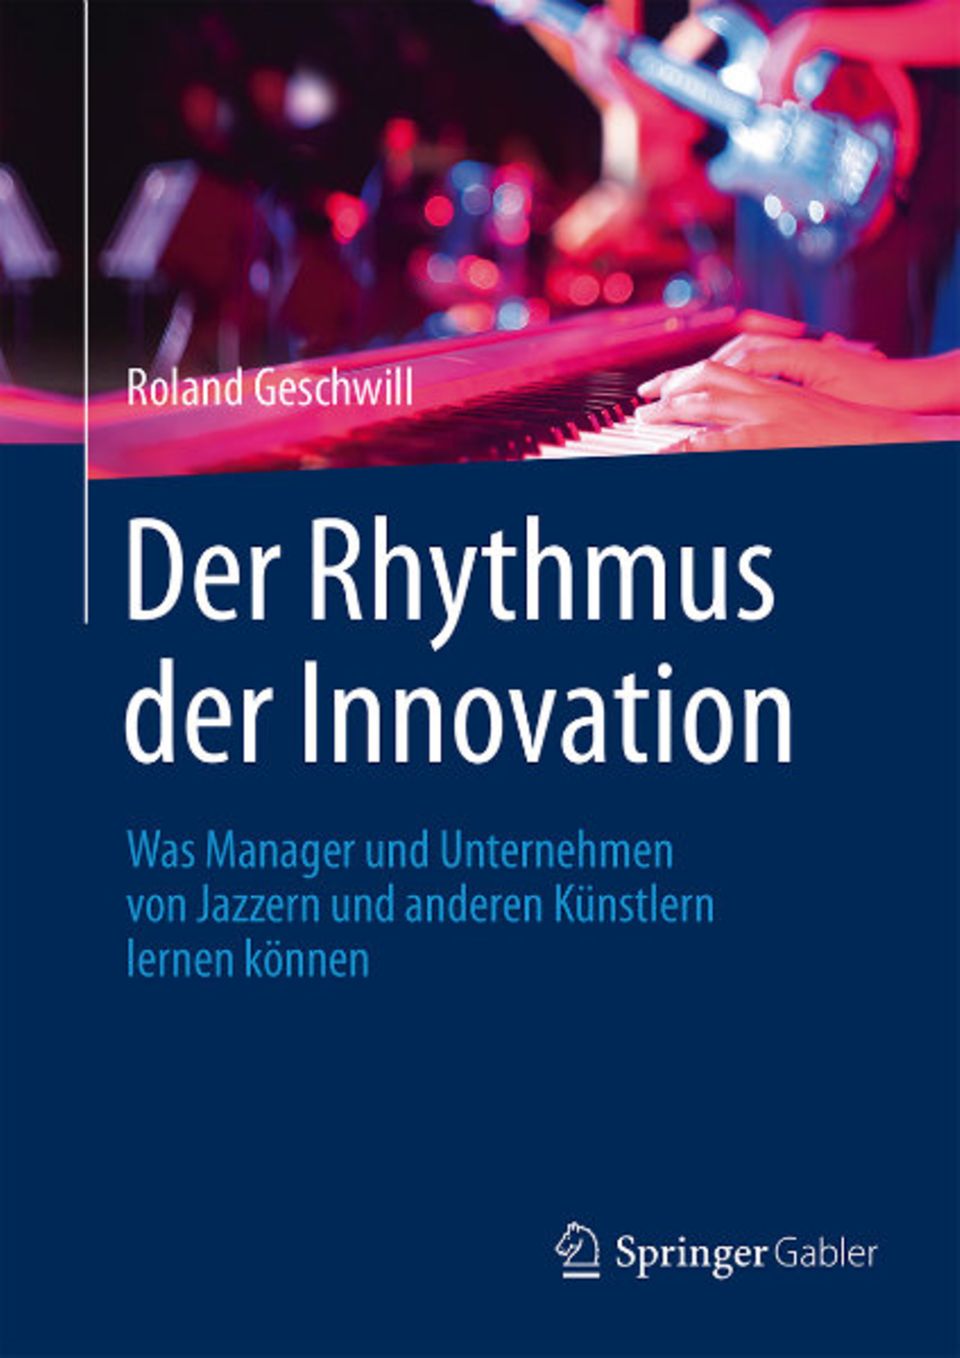 "Der Rythmus der Innovation" ist bei Springer Gabler erschienen